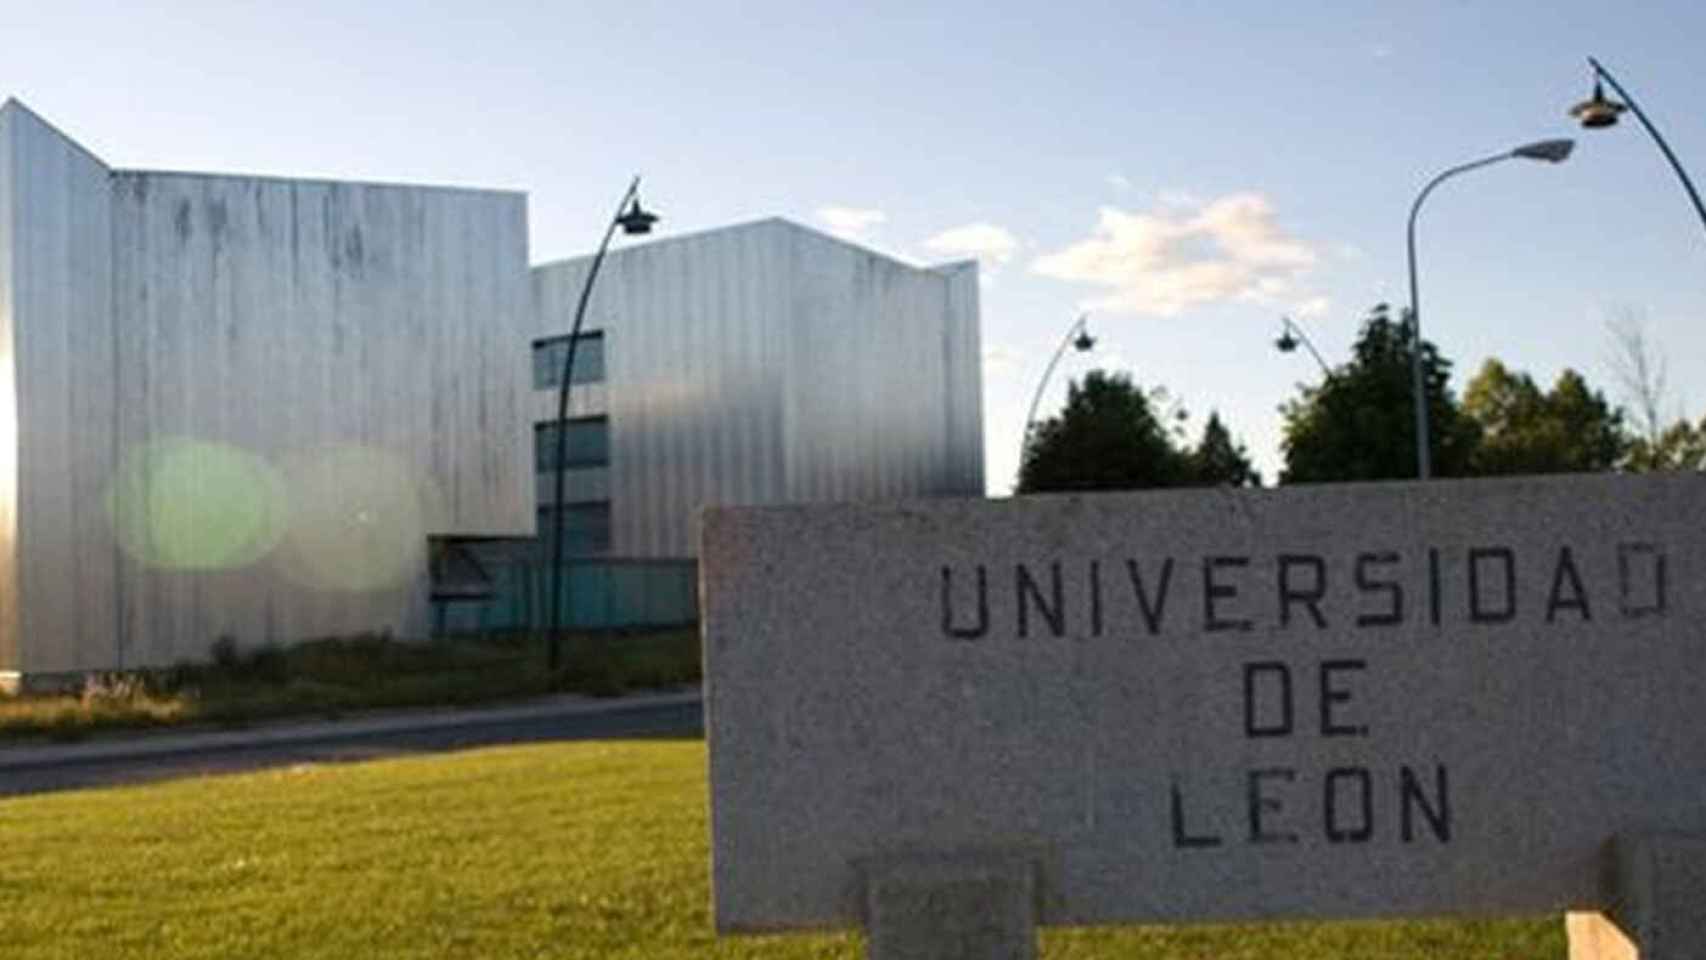 La Universidad de León, donde Giovanni ha estudiado su Grado en Biología y donde cursa un Máster en la actualidad.